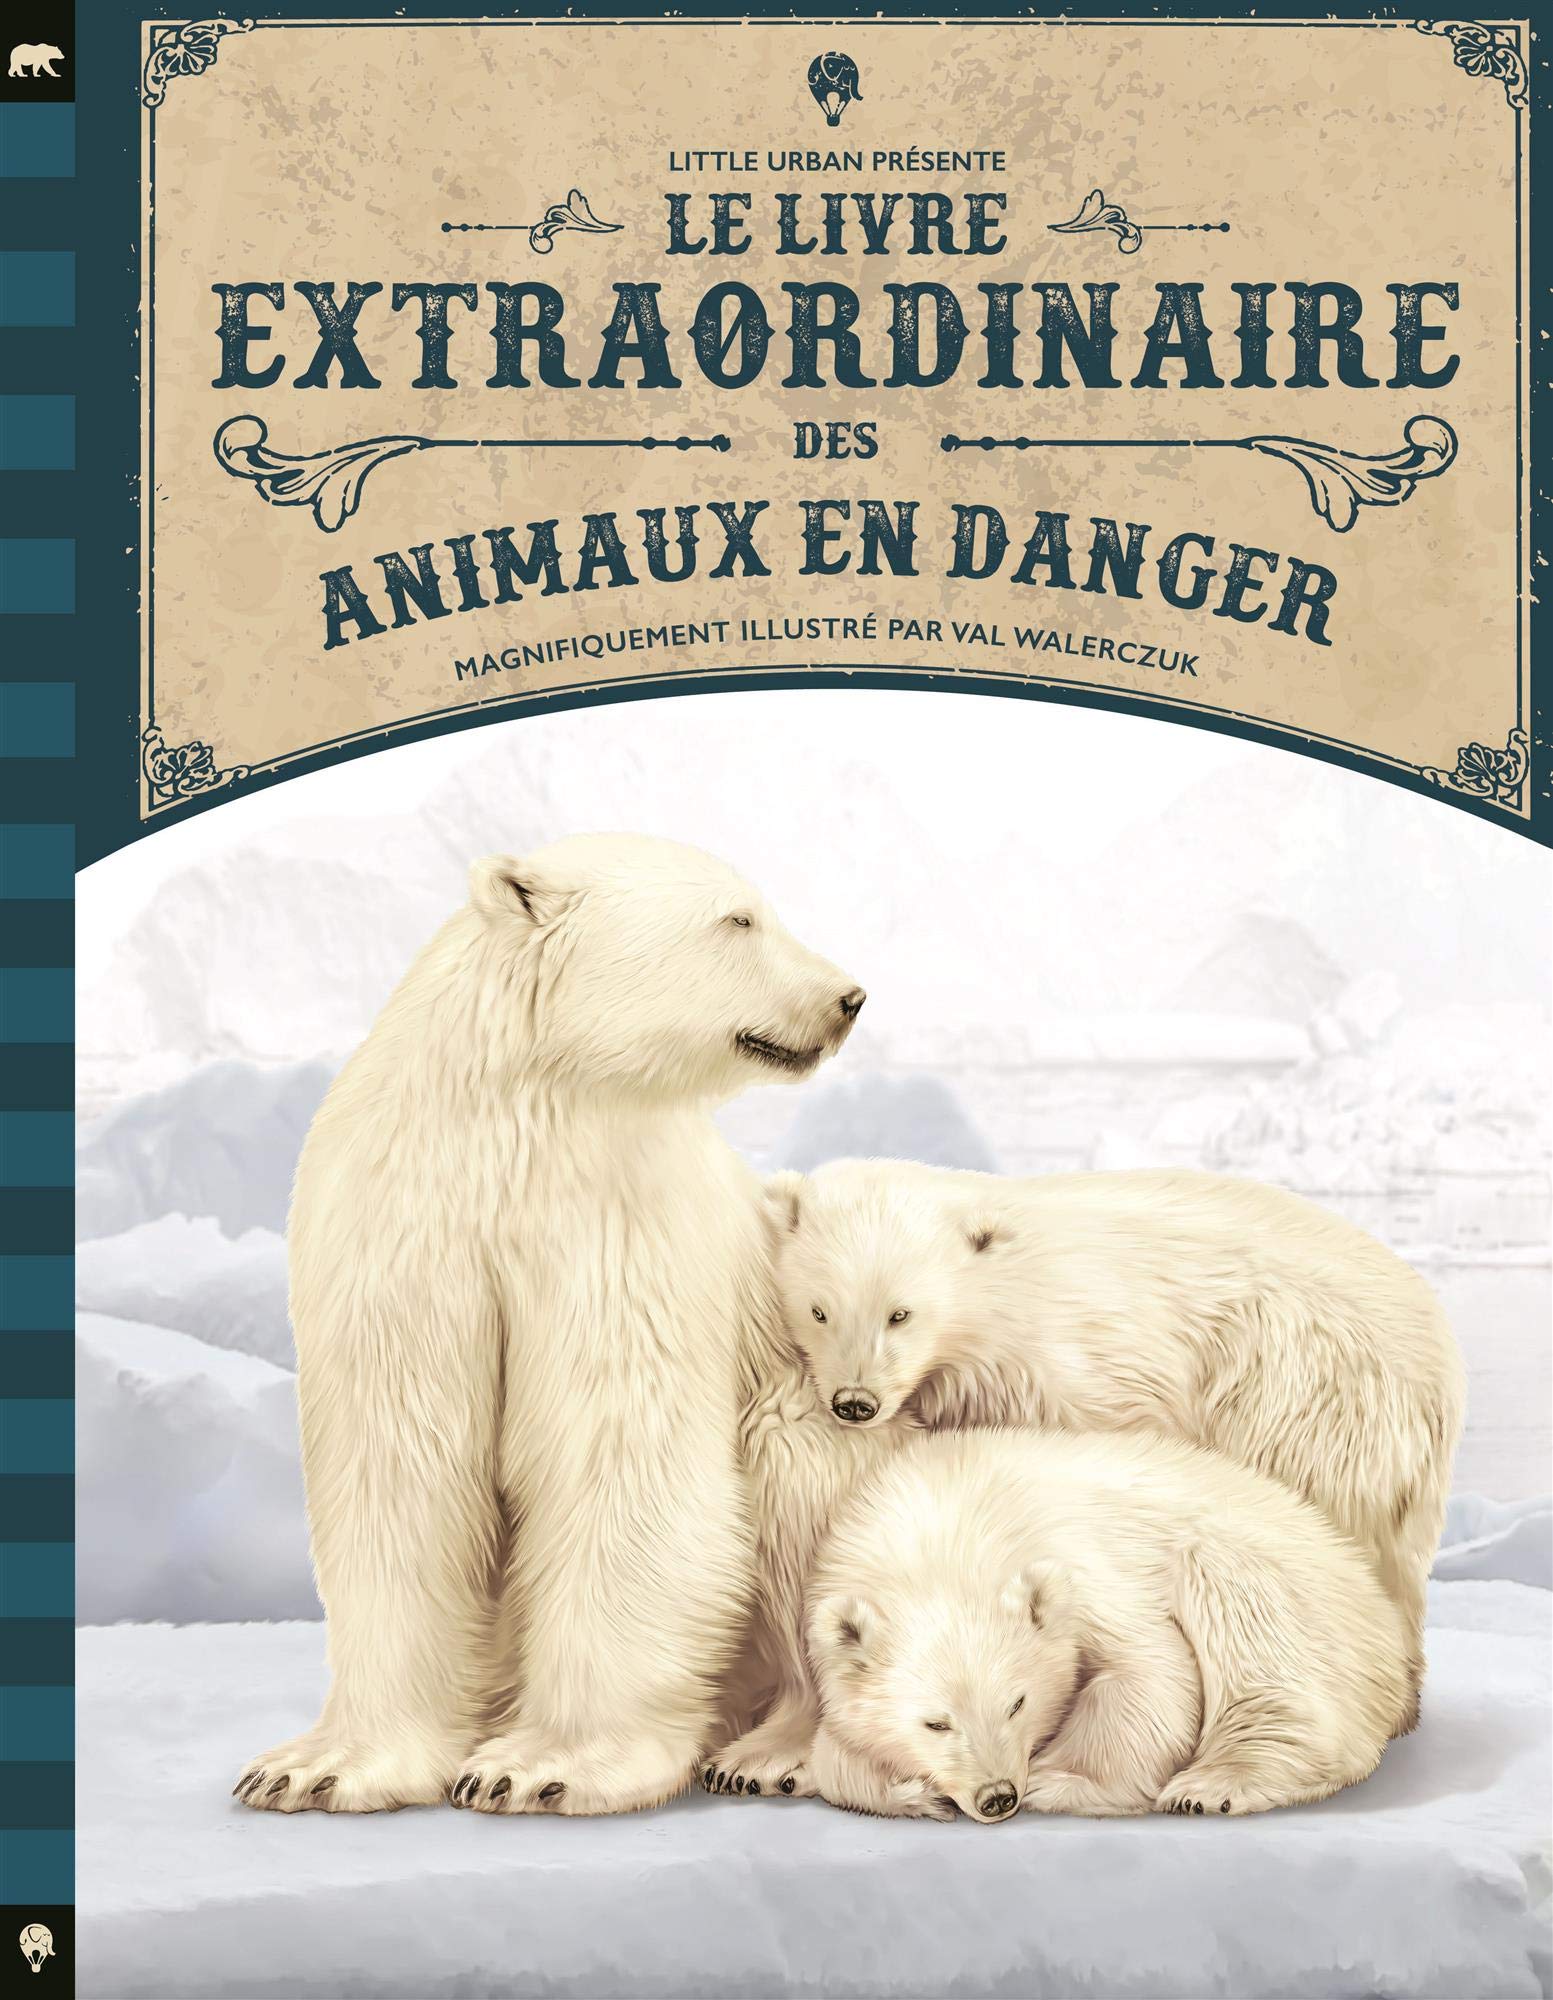 Animaux sauvages 1 - Dictionnaire visuel  Imagier animaux, Animaux sauvages,  Animaux